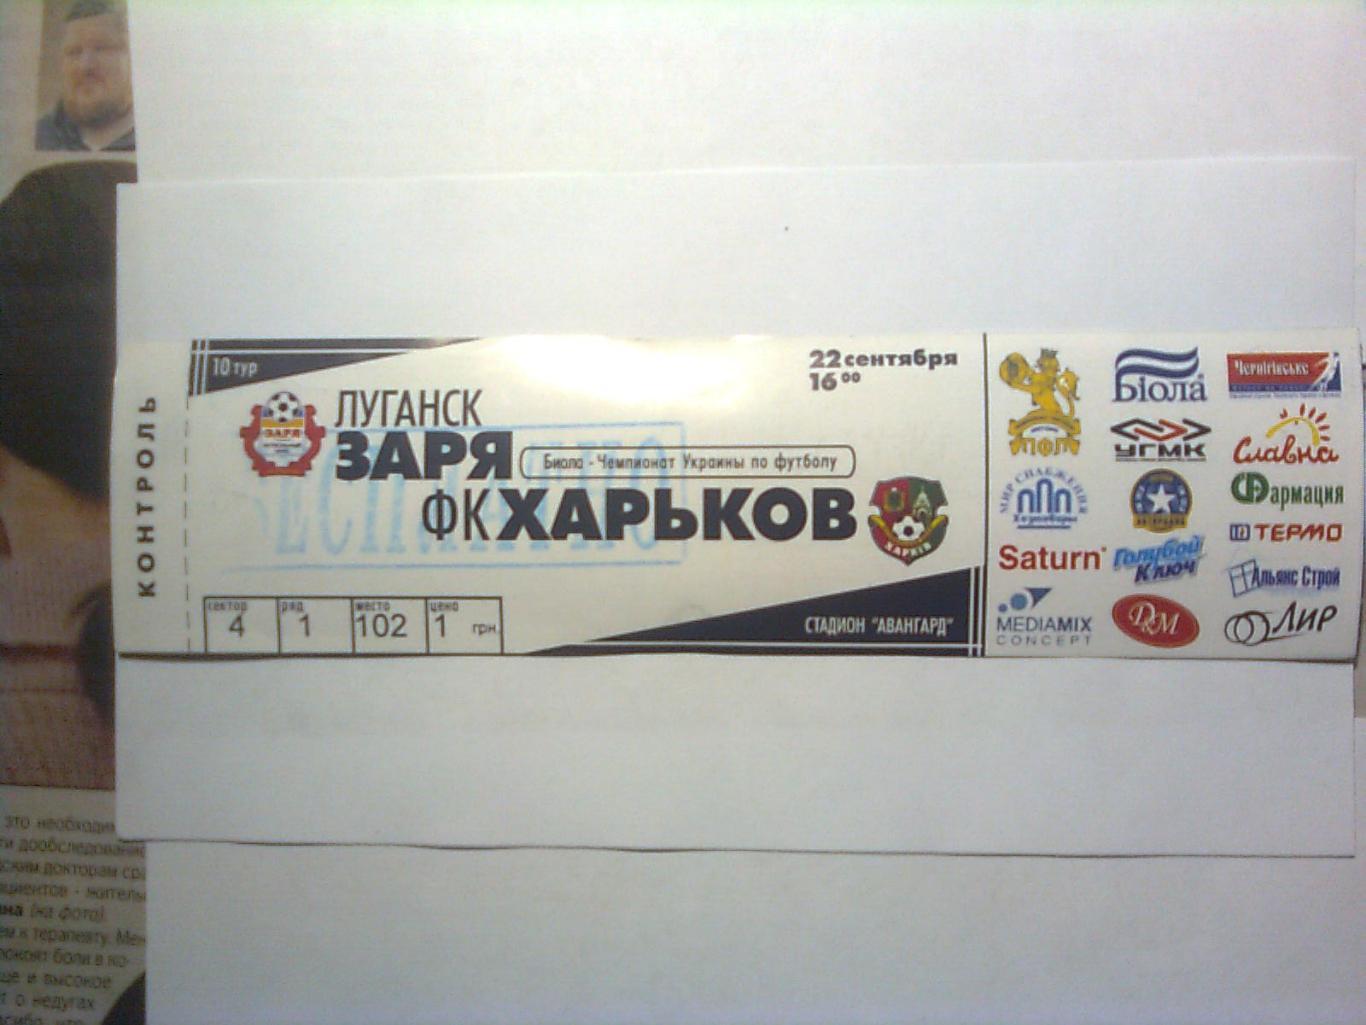 Заря (Луганск)-ФК Харьков (Харьков)-22 сентября 2007 год.